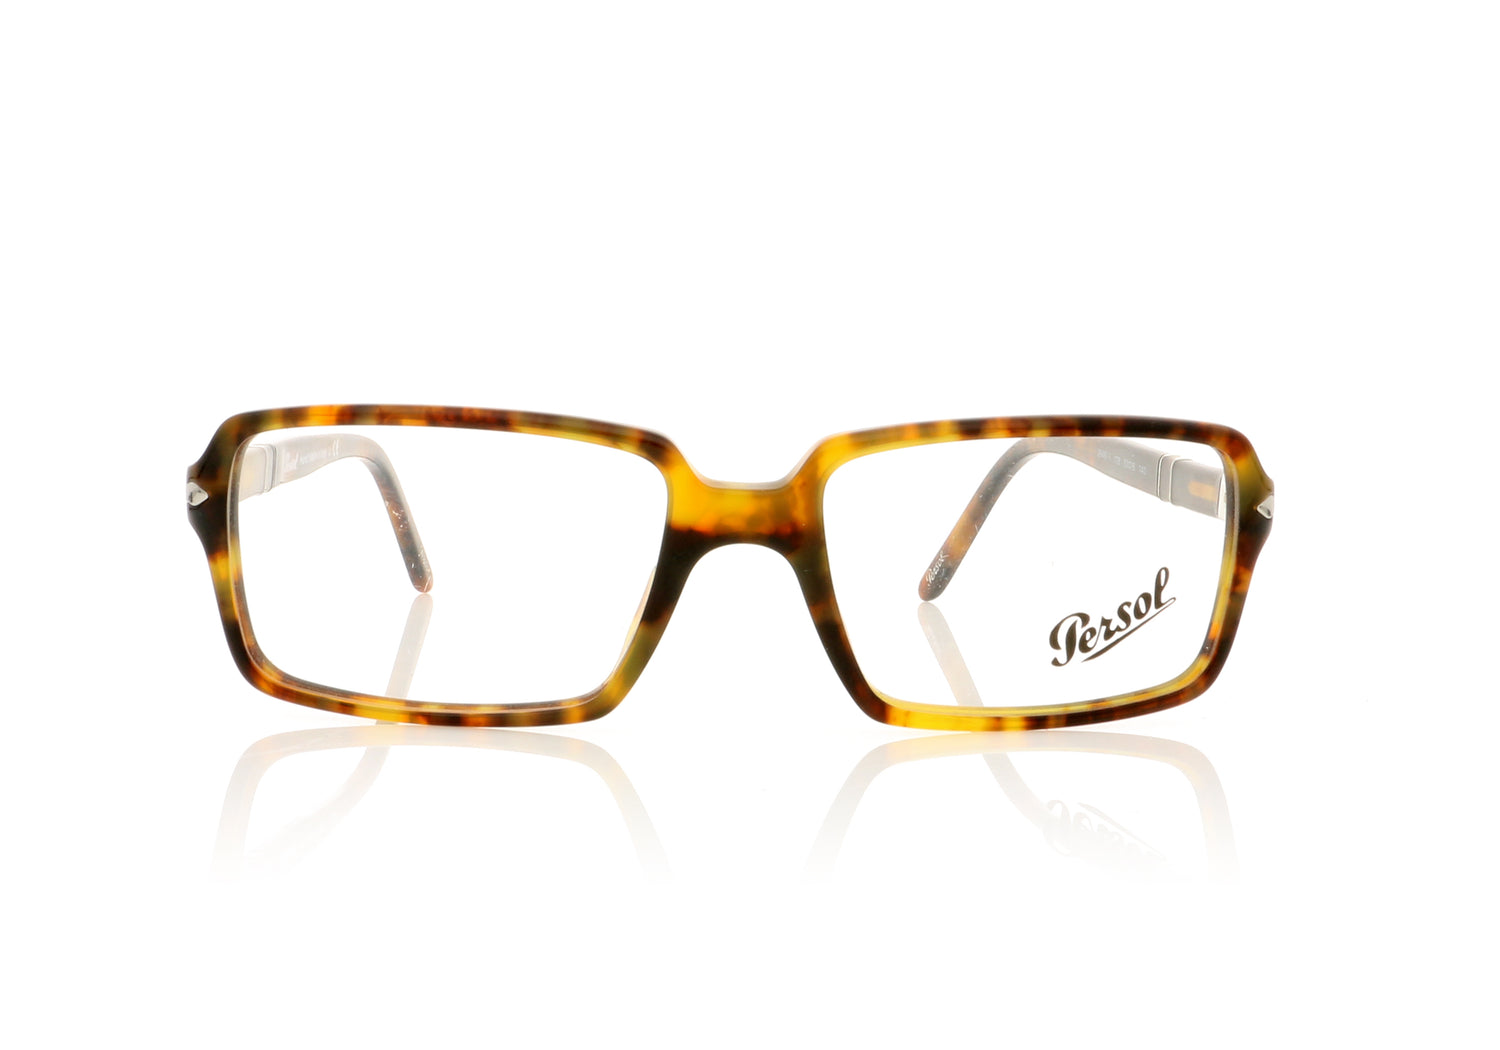 Persol 2946-V H H Glasses - Front